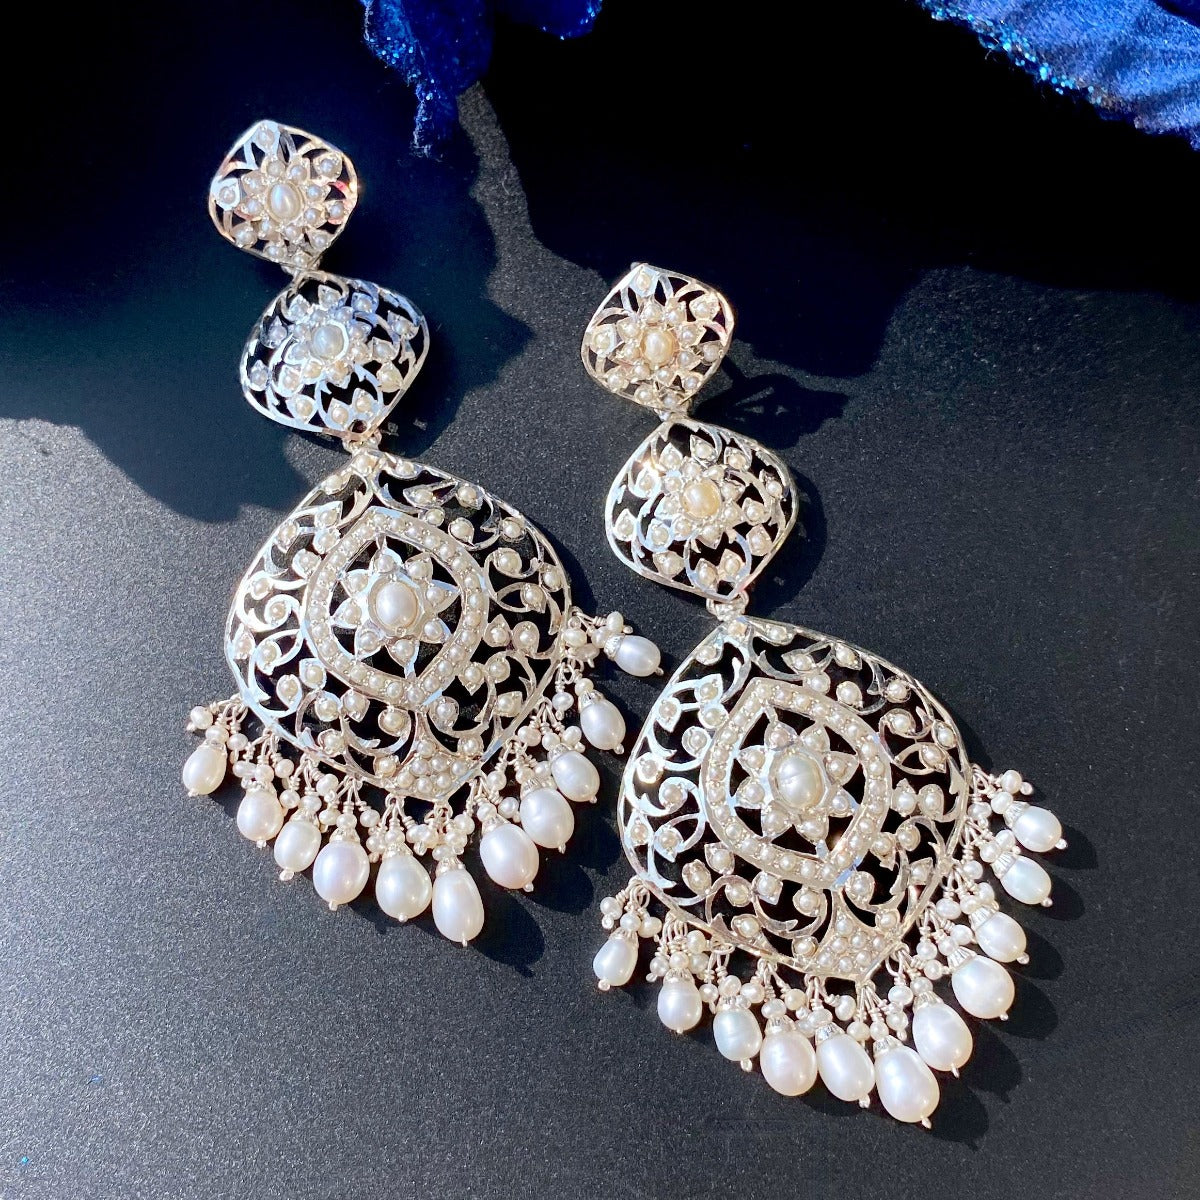 antique silver earrings